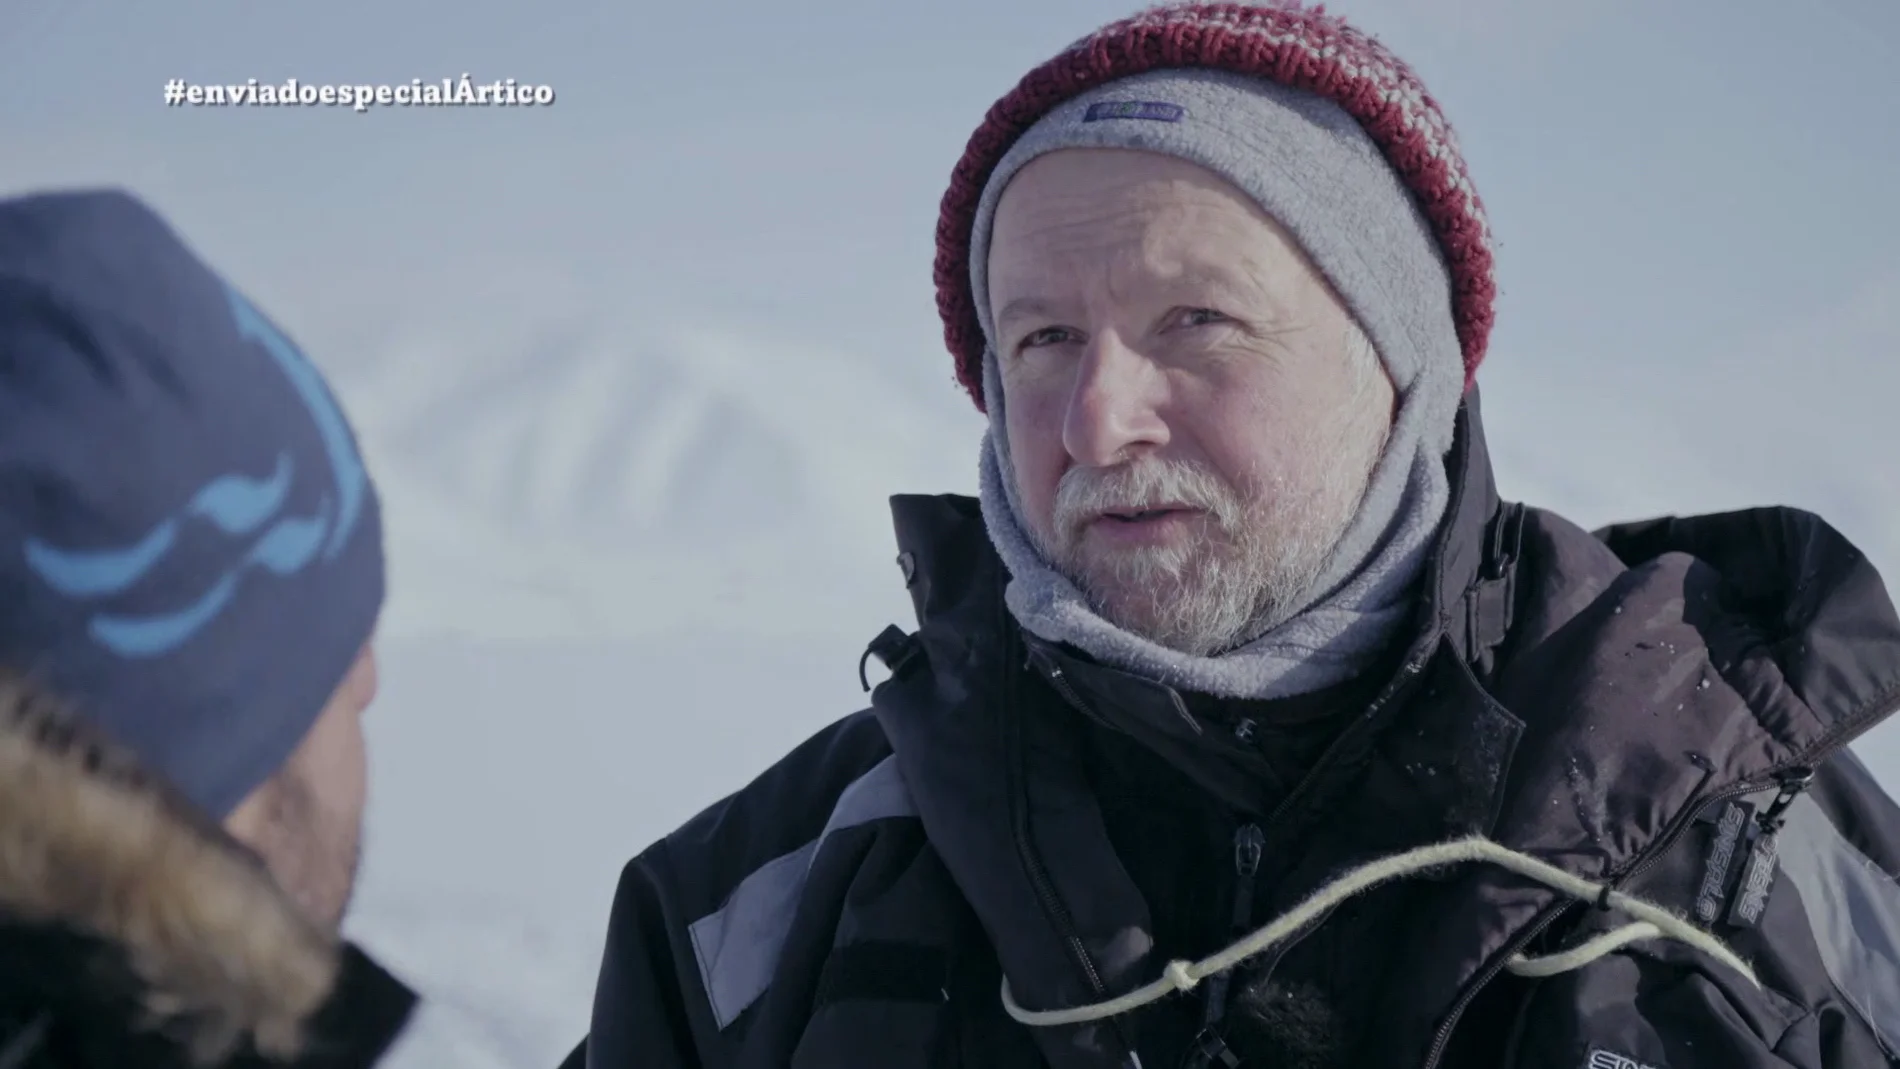  Rolf Gradinger, biólogo marino: "La pérdida de hielo afectará a la pesca, así que hay una cuestión económica"